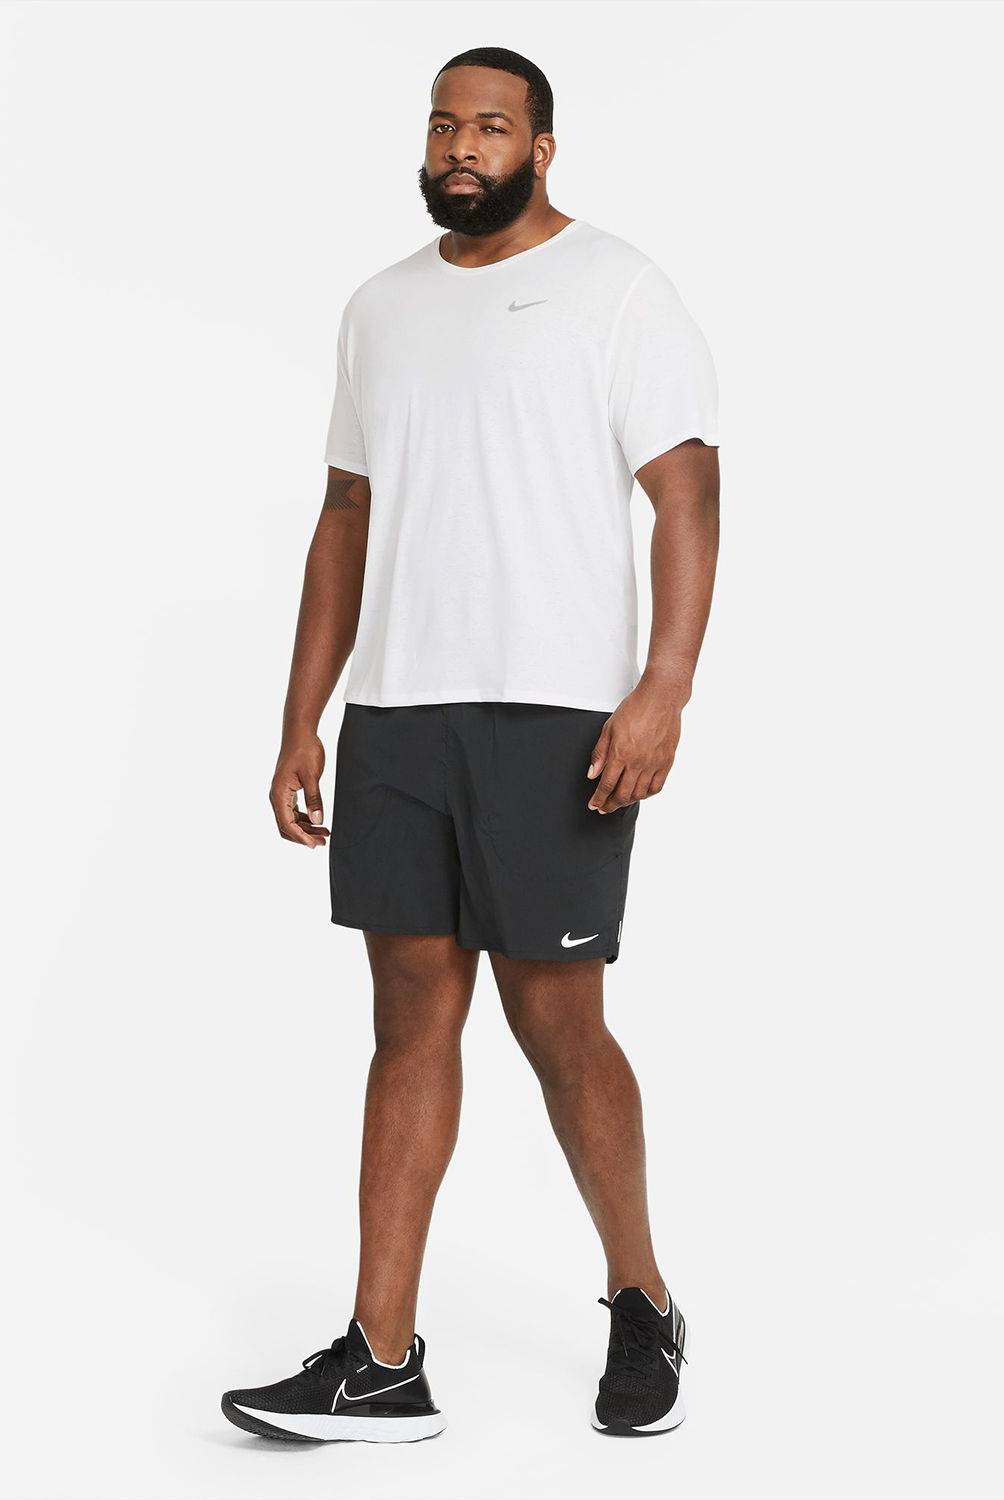 NIKE - Camiseta Nike Hombre